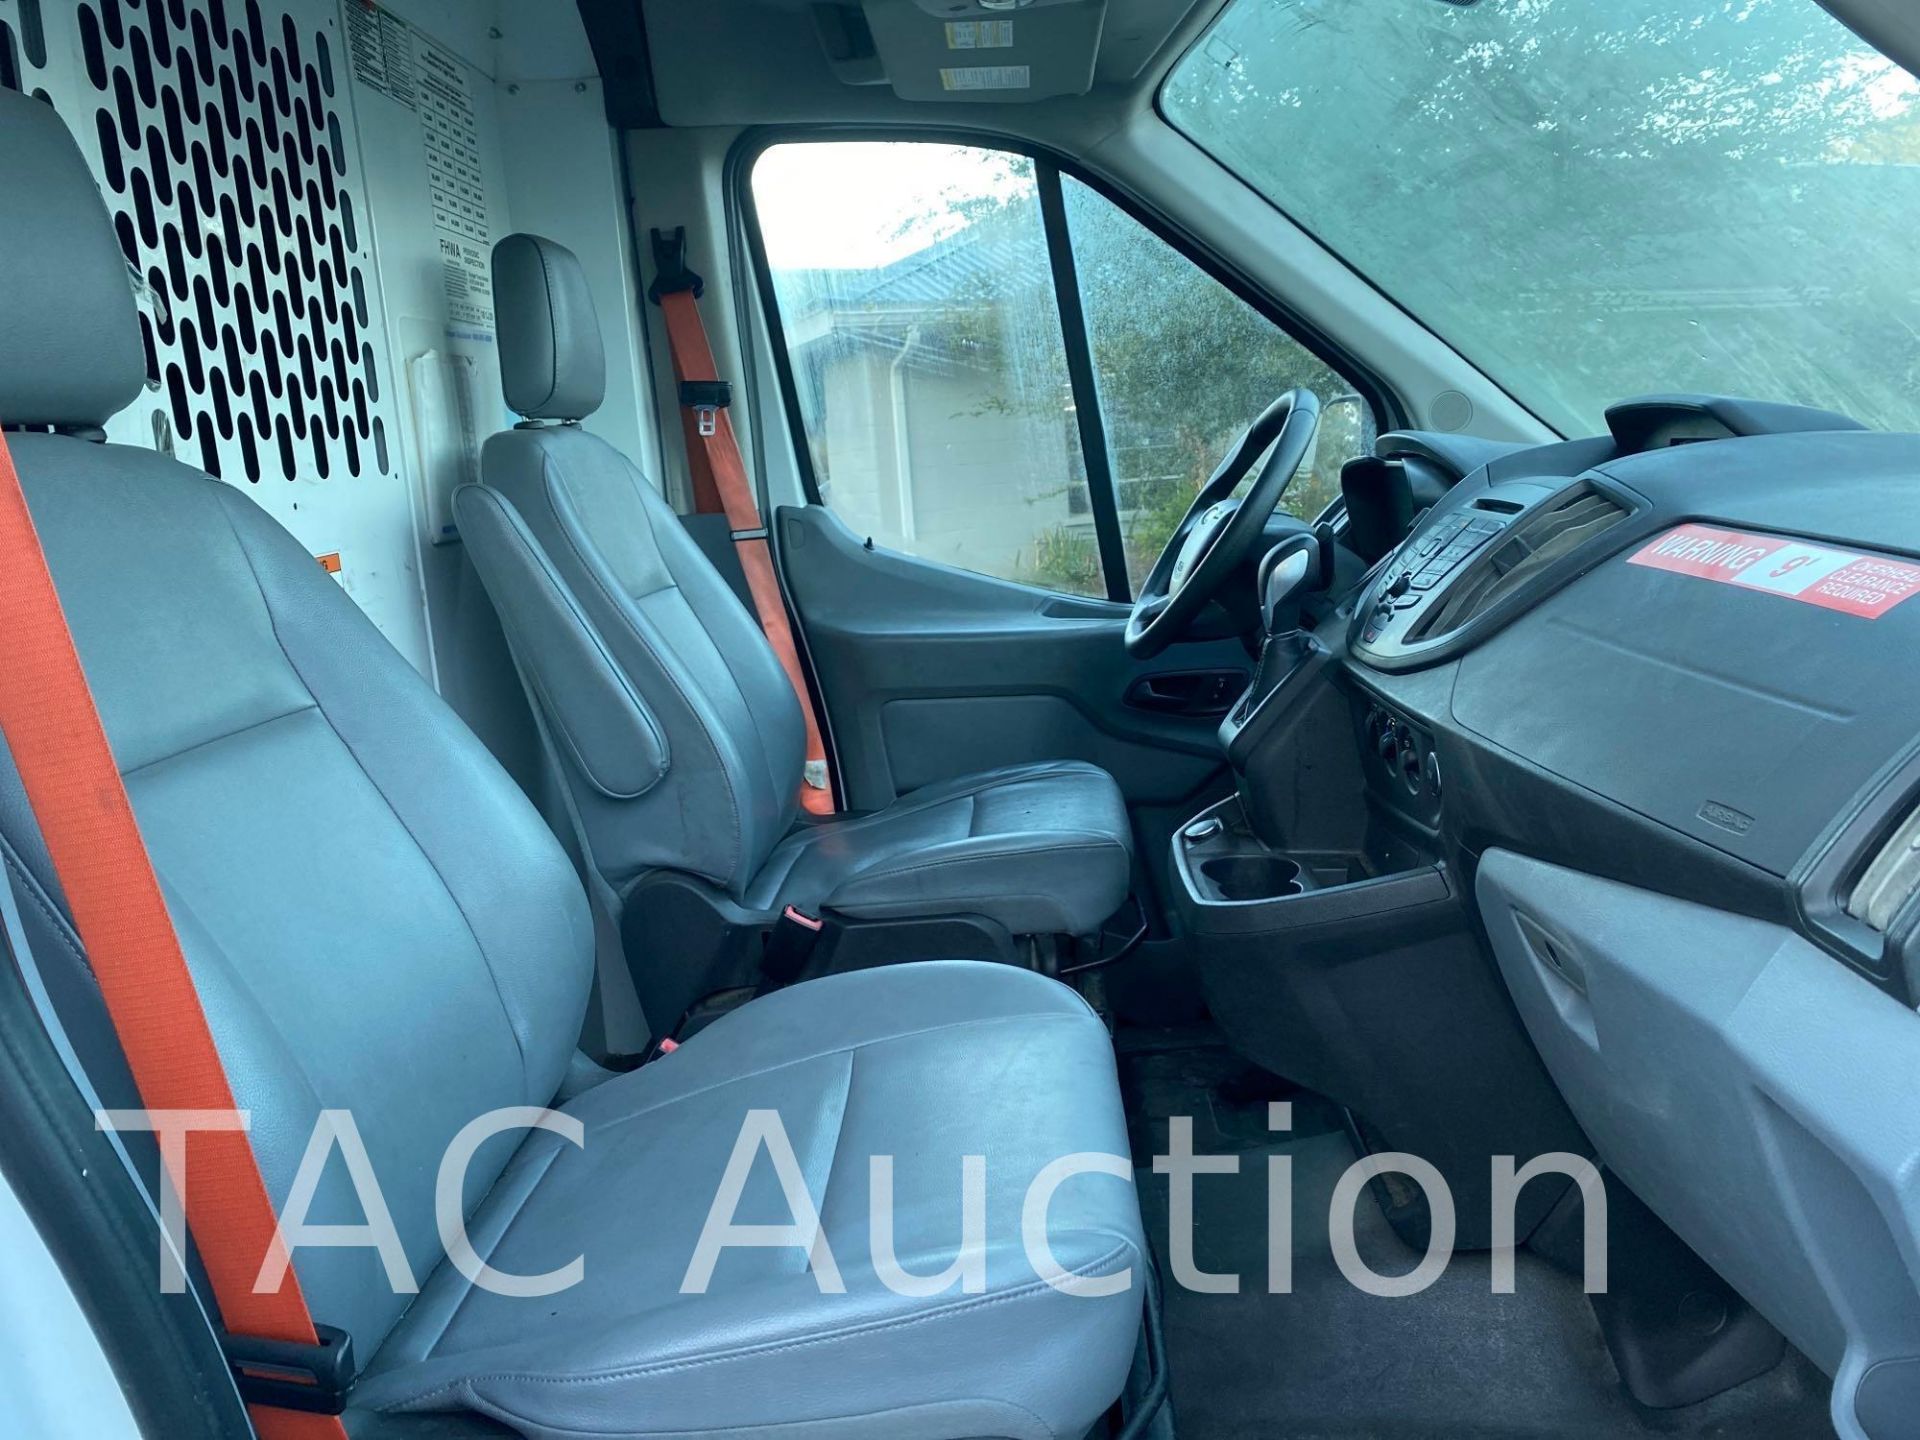 2019 Ford Transit 150 Cargo Van - Image 16 of 46